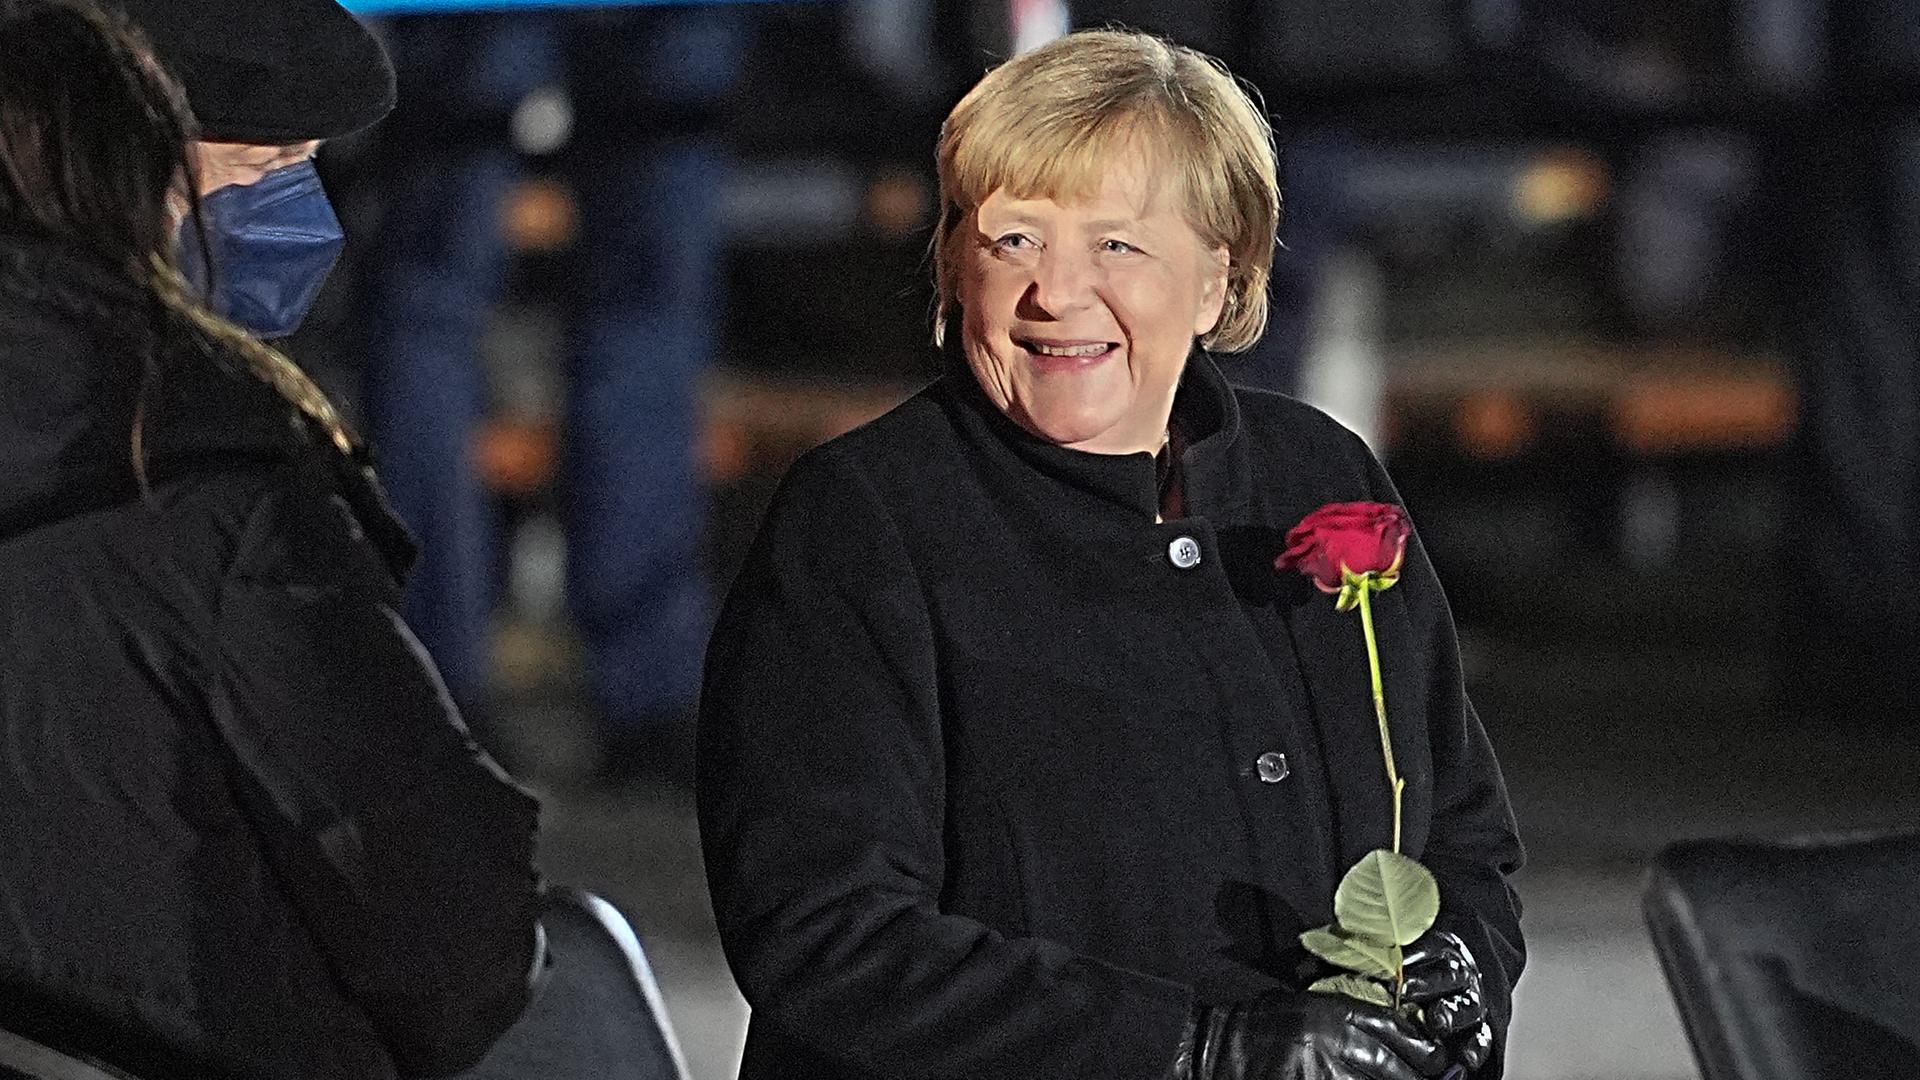 Bundeskanzlerin Angela Merkel (CDU) lacht nach ihrer Verabschiedung durch die Bundeswehr mit einer Rosen in der Hand neben ihrem Mann, Joachim Sauer. Mit einem Großen Zapfenstreich wird Kanzlerin Merkel gegen Ende ihrer Regierungszeit nach 16 Jahren im Bendlerblock verabschiedet